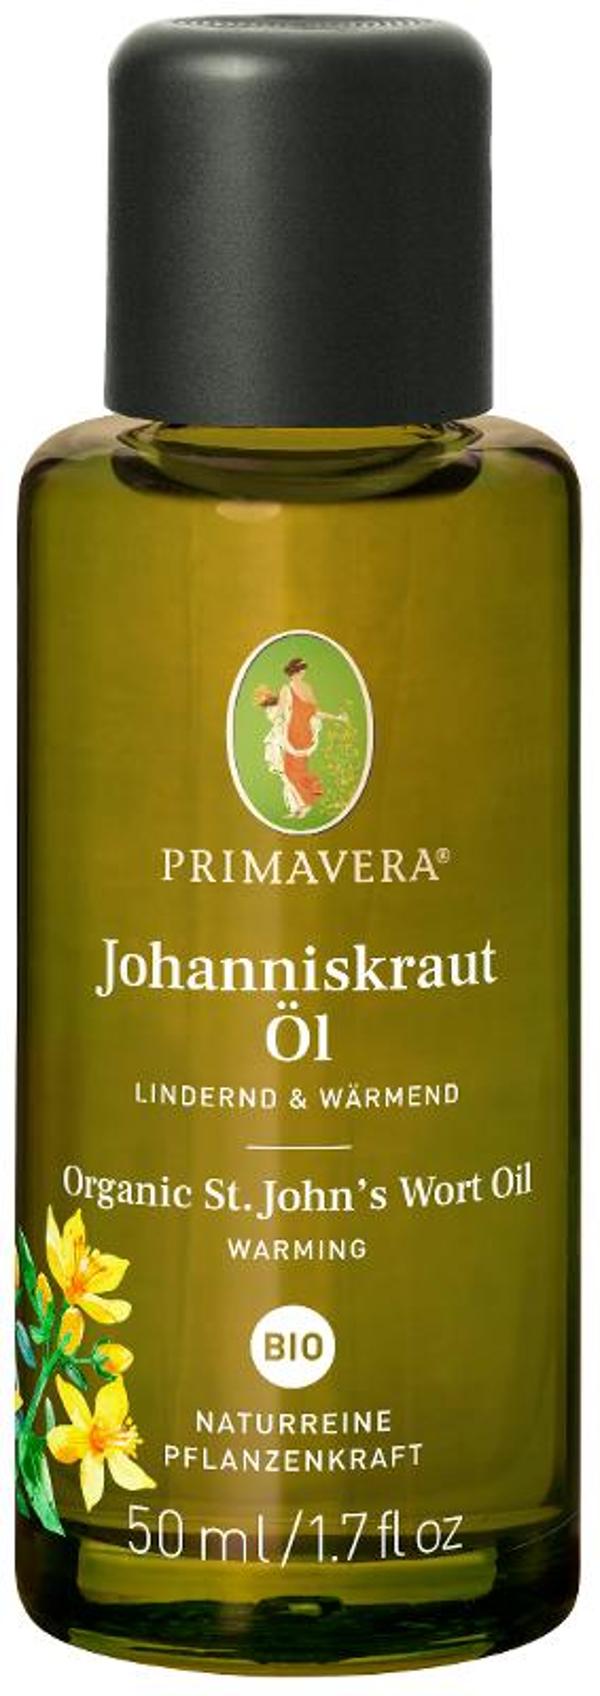 Produktfoto zu Johanniskrautöl (50 ml)